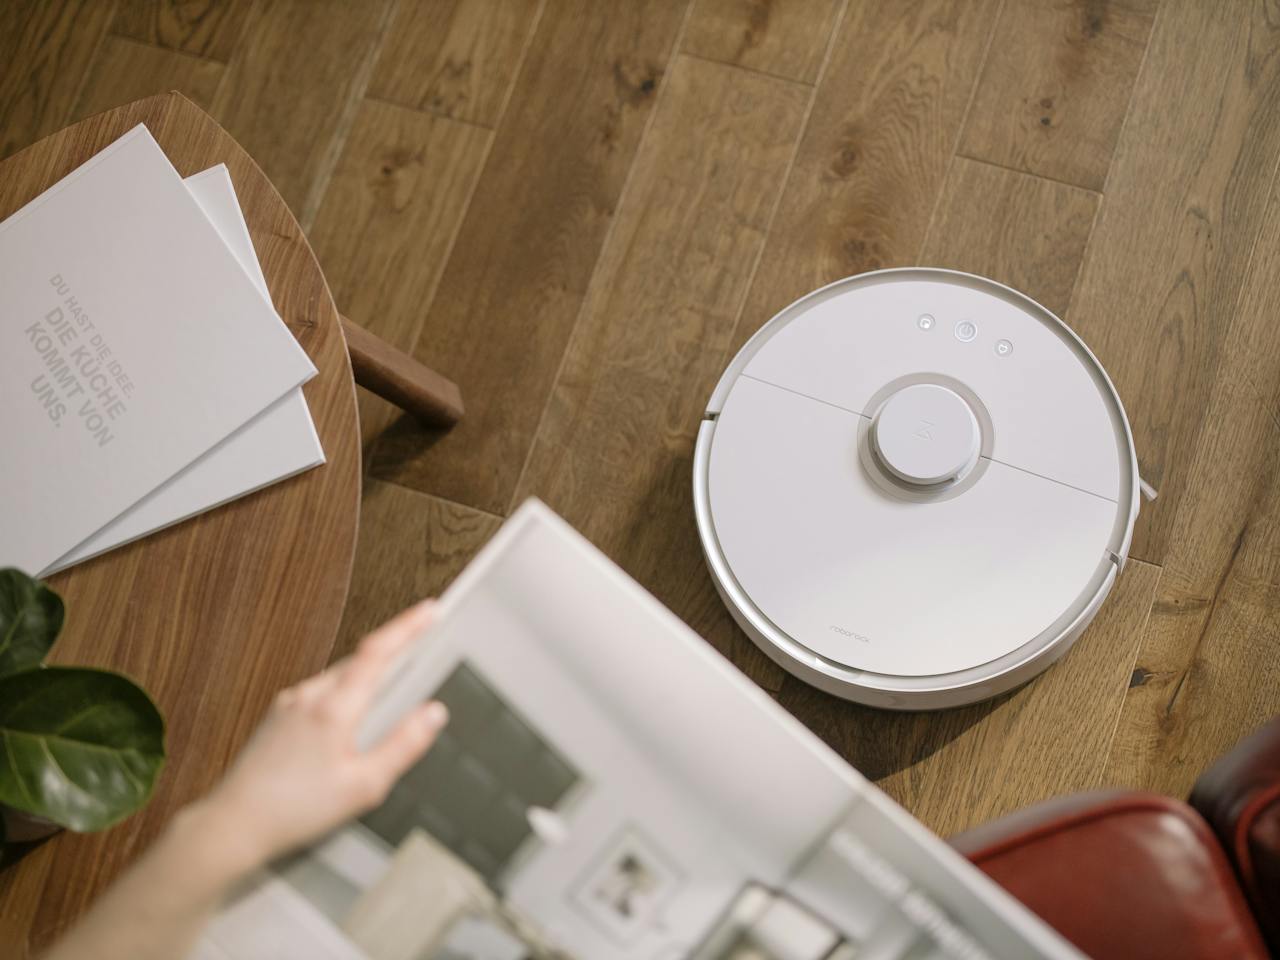 Xiaomi iRobot - nowoczesne rozwiązania dla czystszego domu